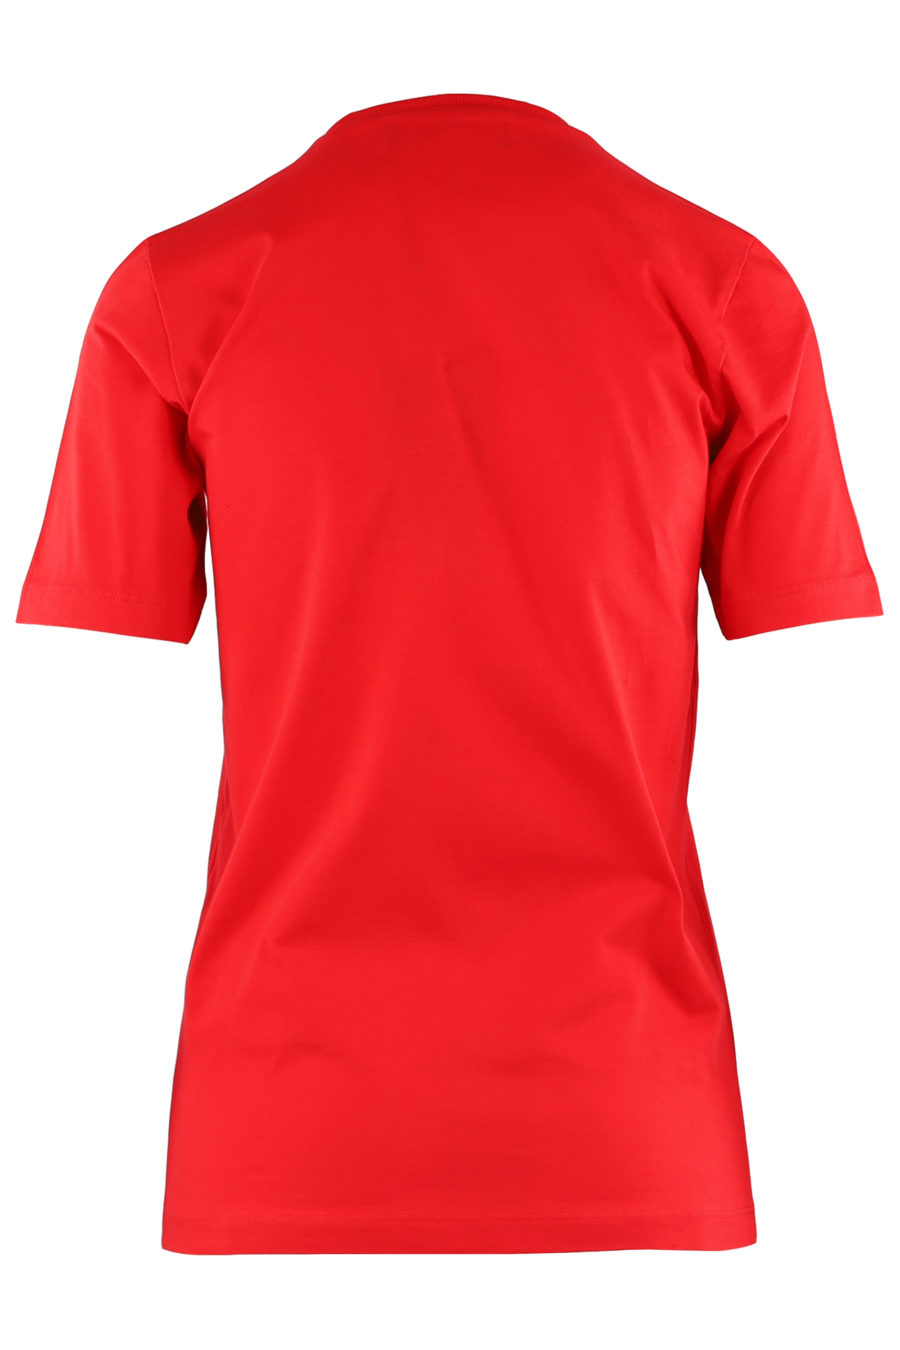 Red T-shirt with white "Icon" logo - 061f0ee81fc51e60436167b7a14d57c30c81eb69